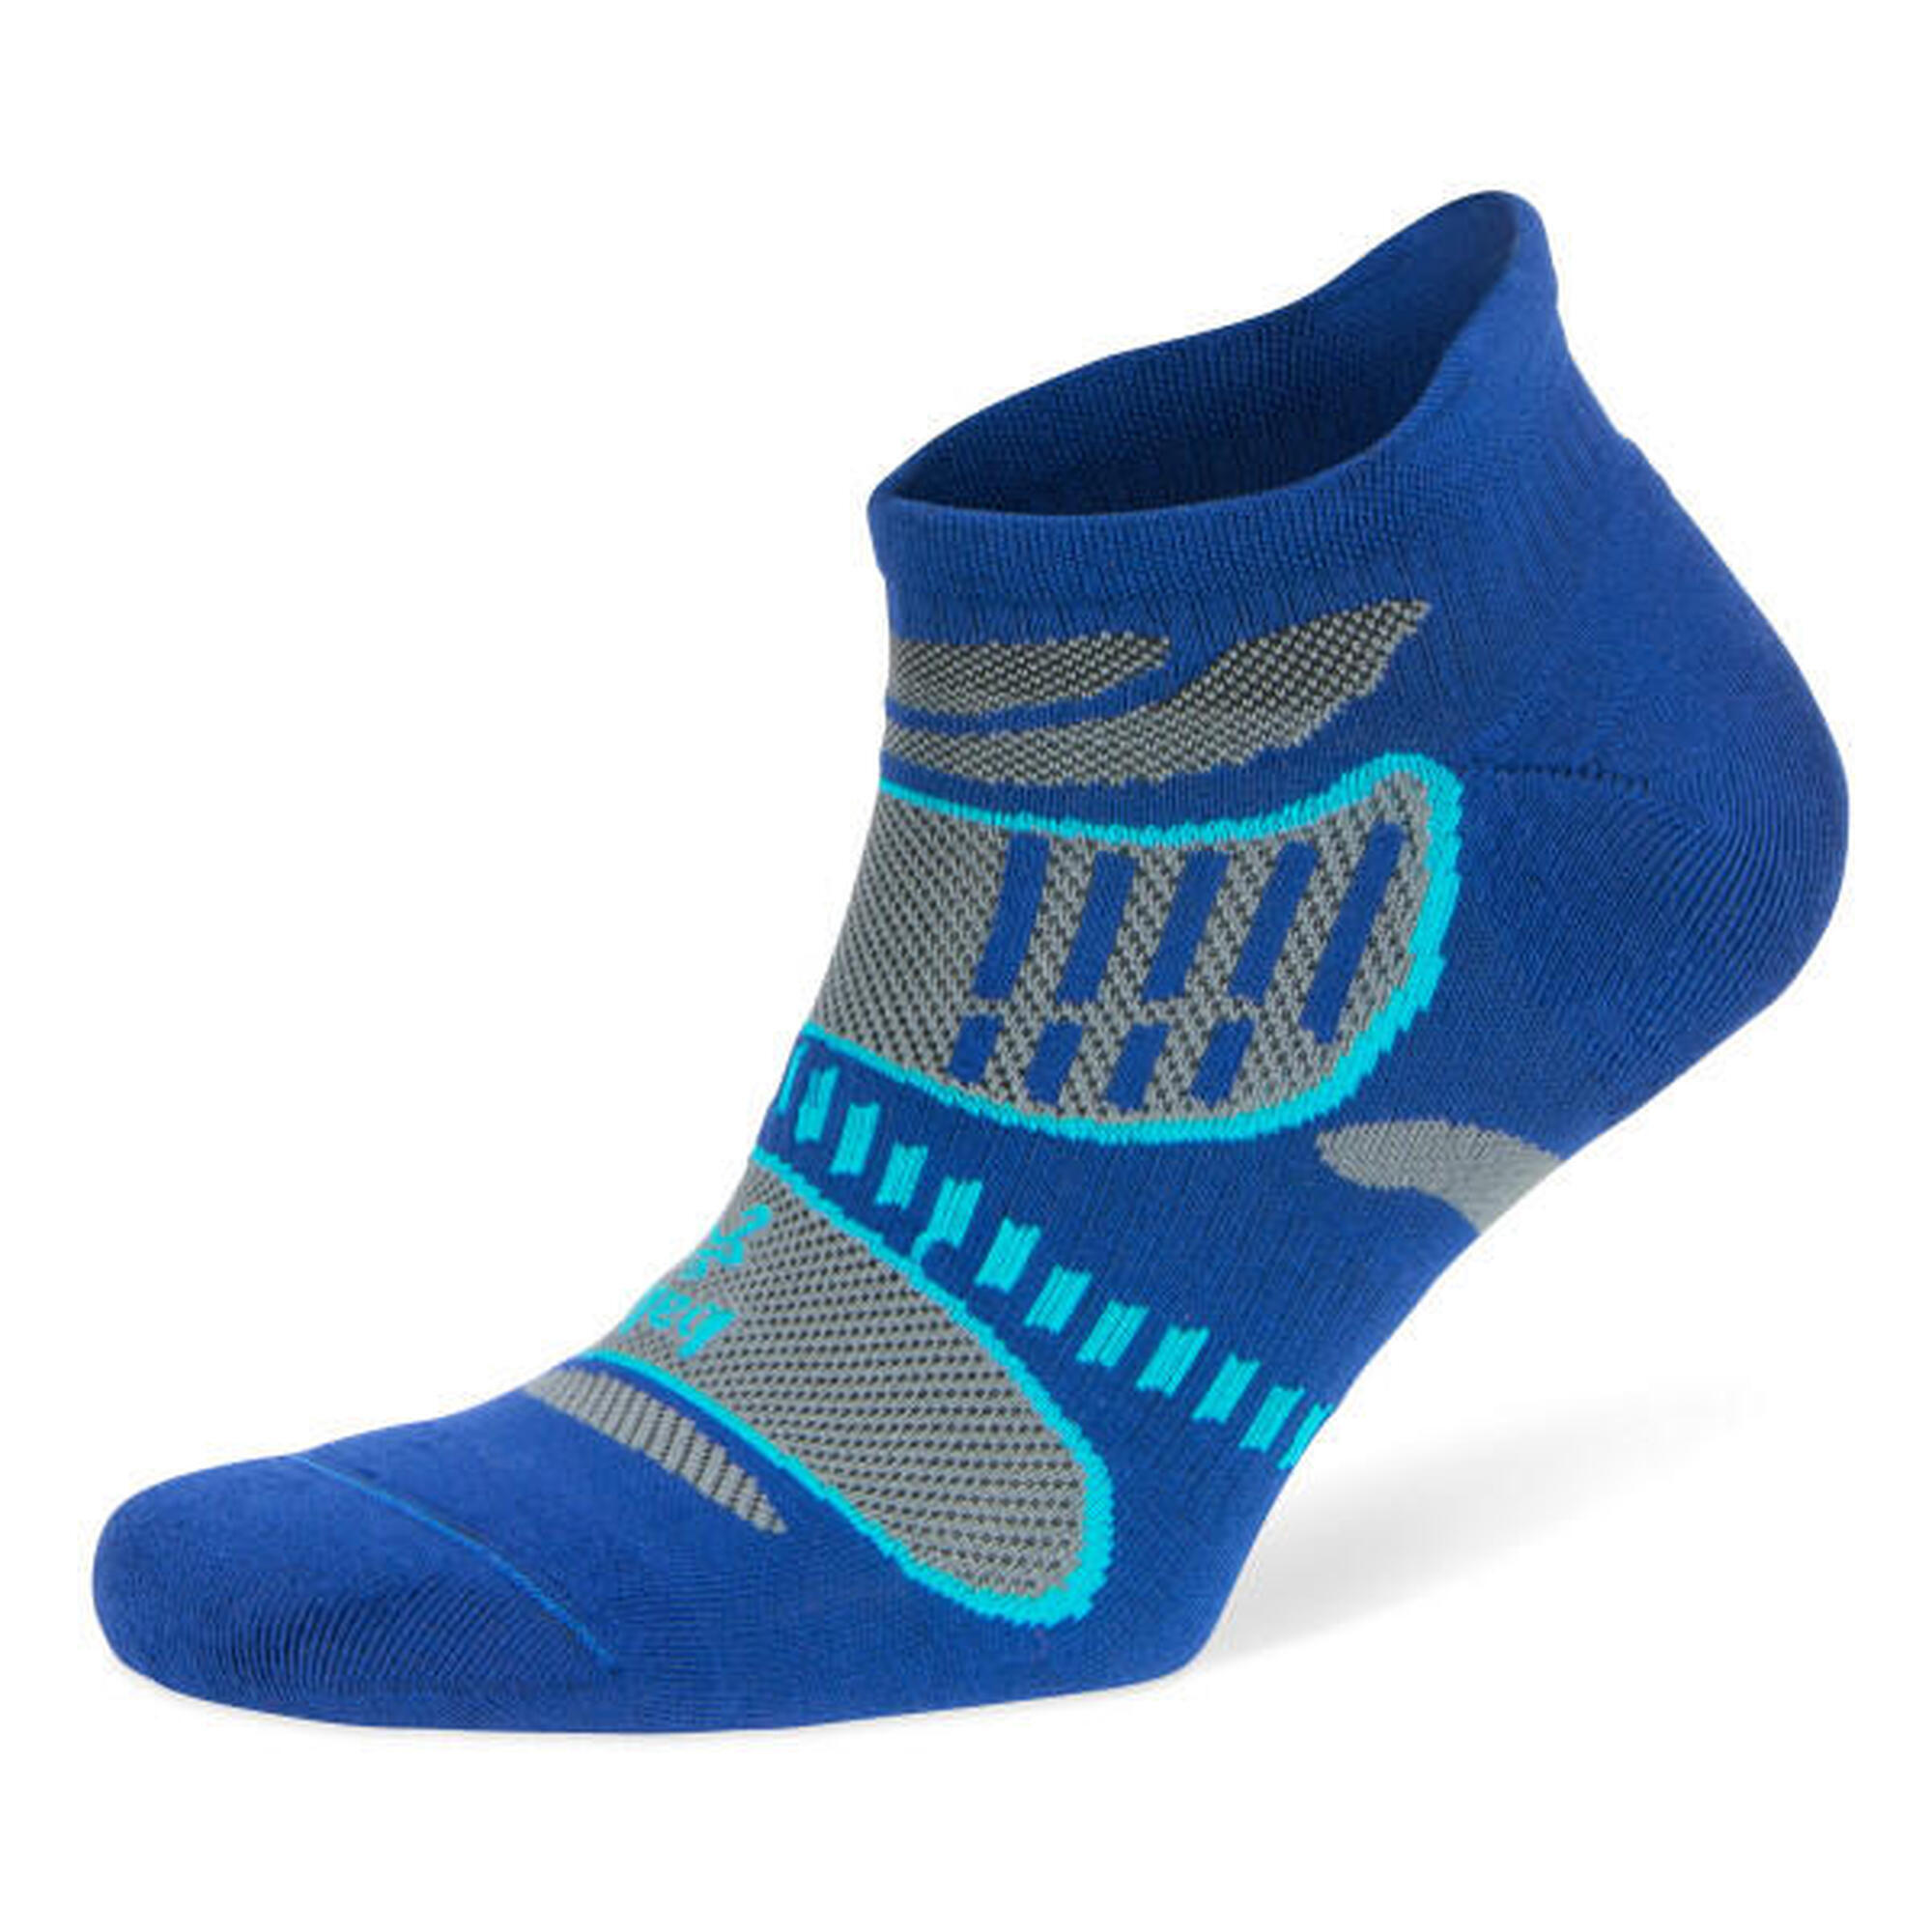 Balega running calcetines: Ligereza, control de la humedad y confort Talla S